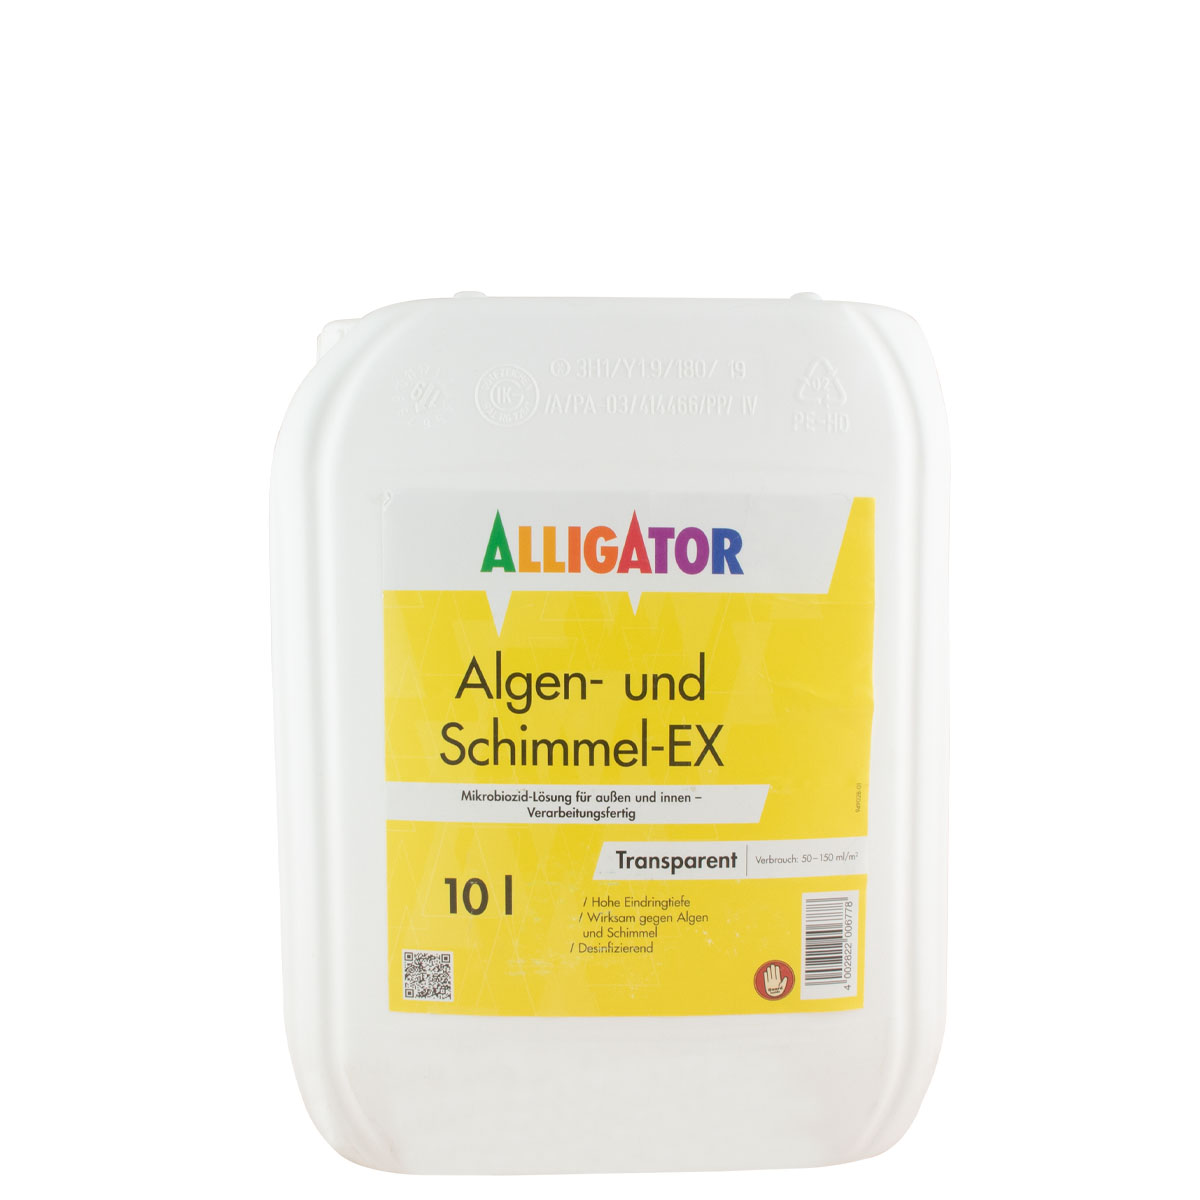 Alligator Algen+Schimmel-Ex transparent 10L vormals Fassadenreiniger